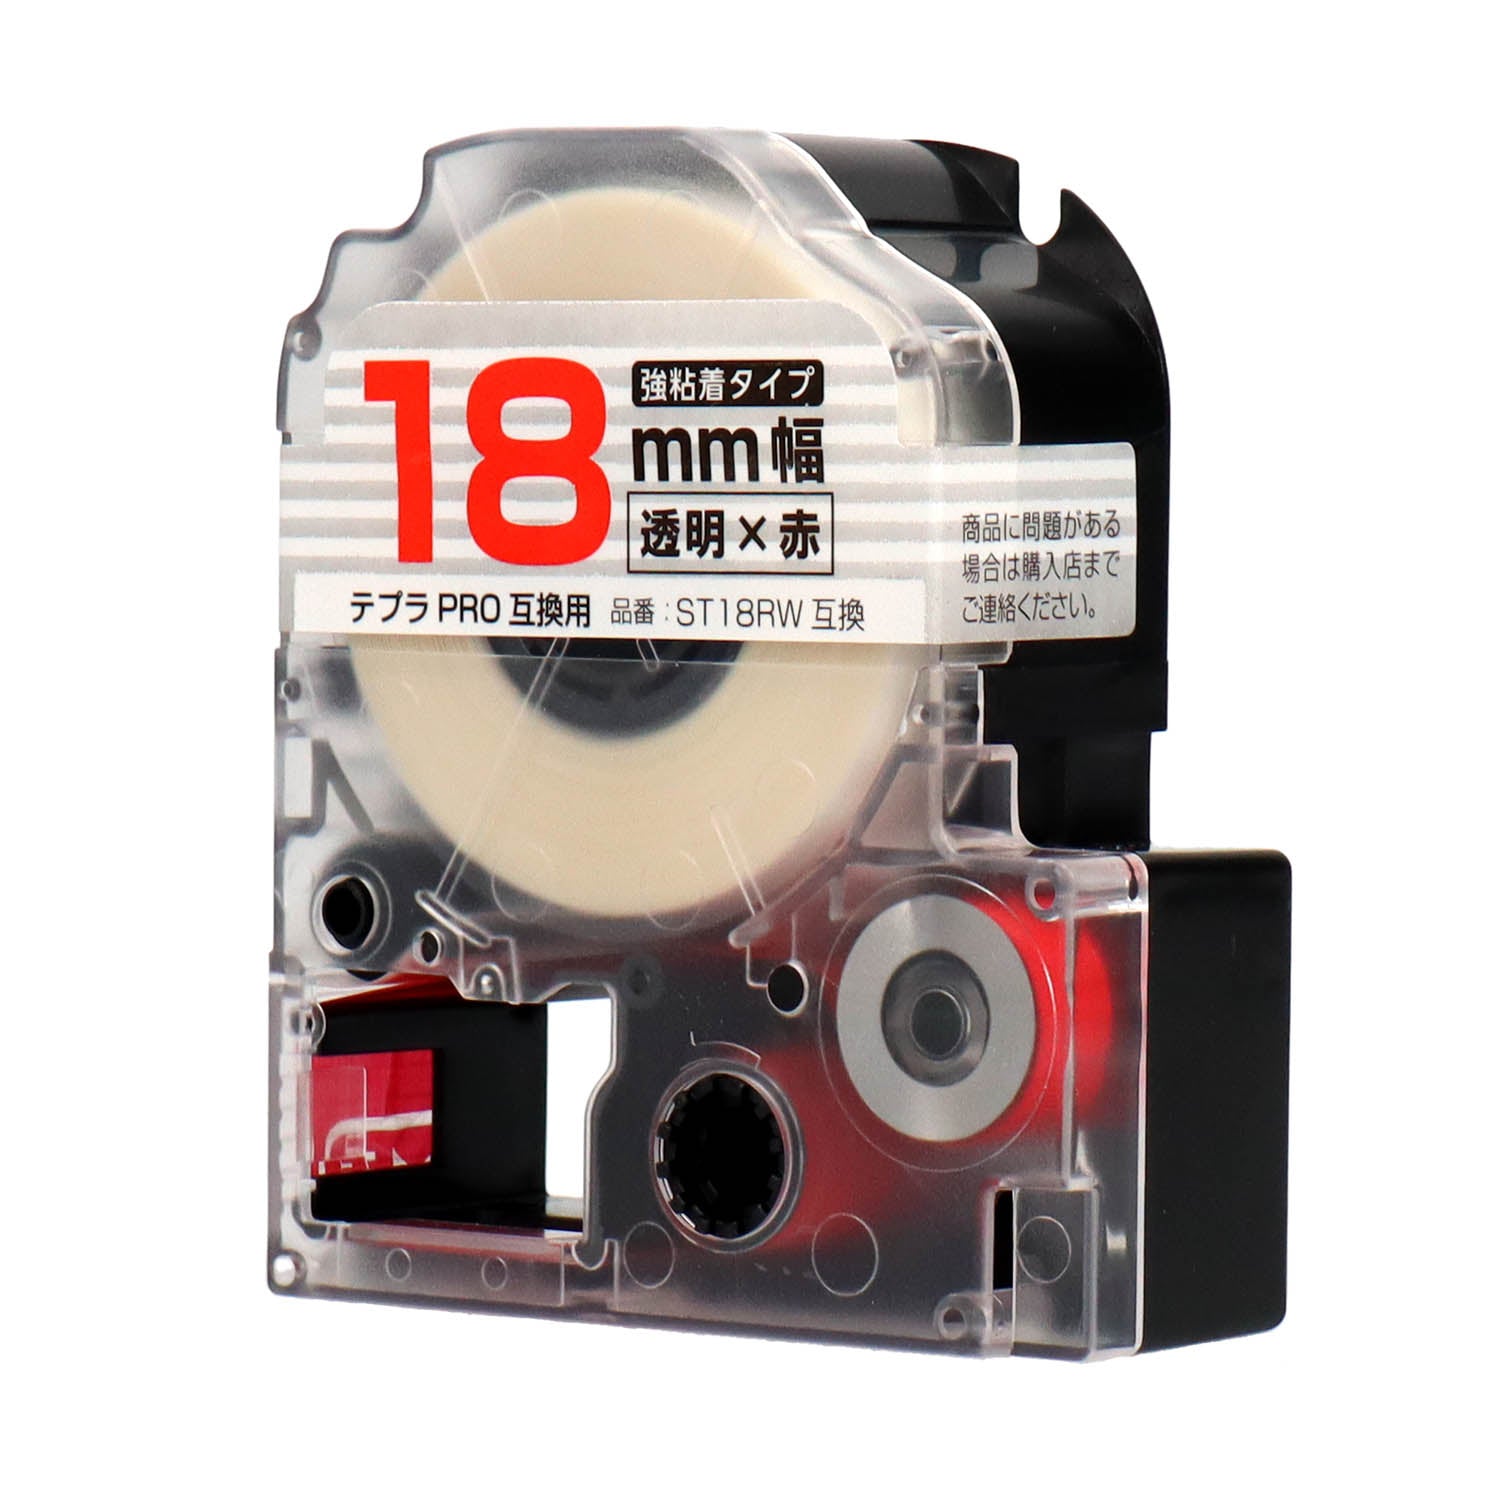 テプラPRO用互換テープカートリッジ 透明×赤文字 18mm